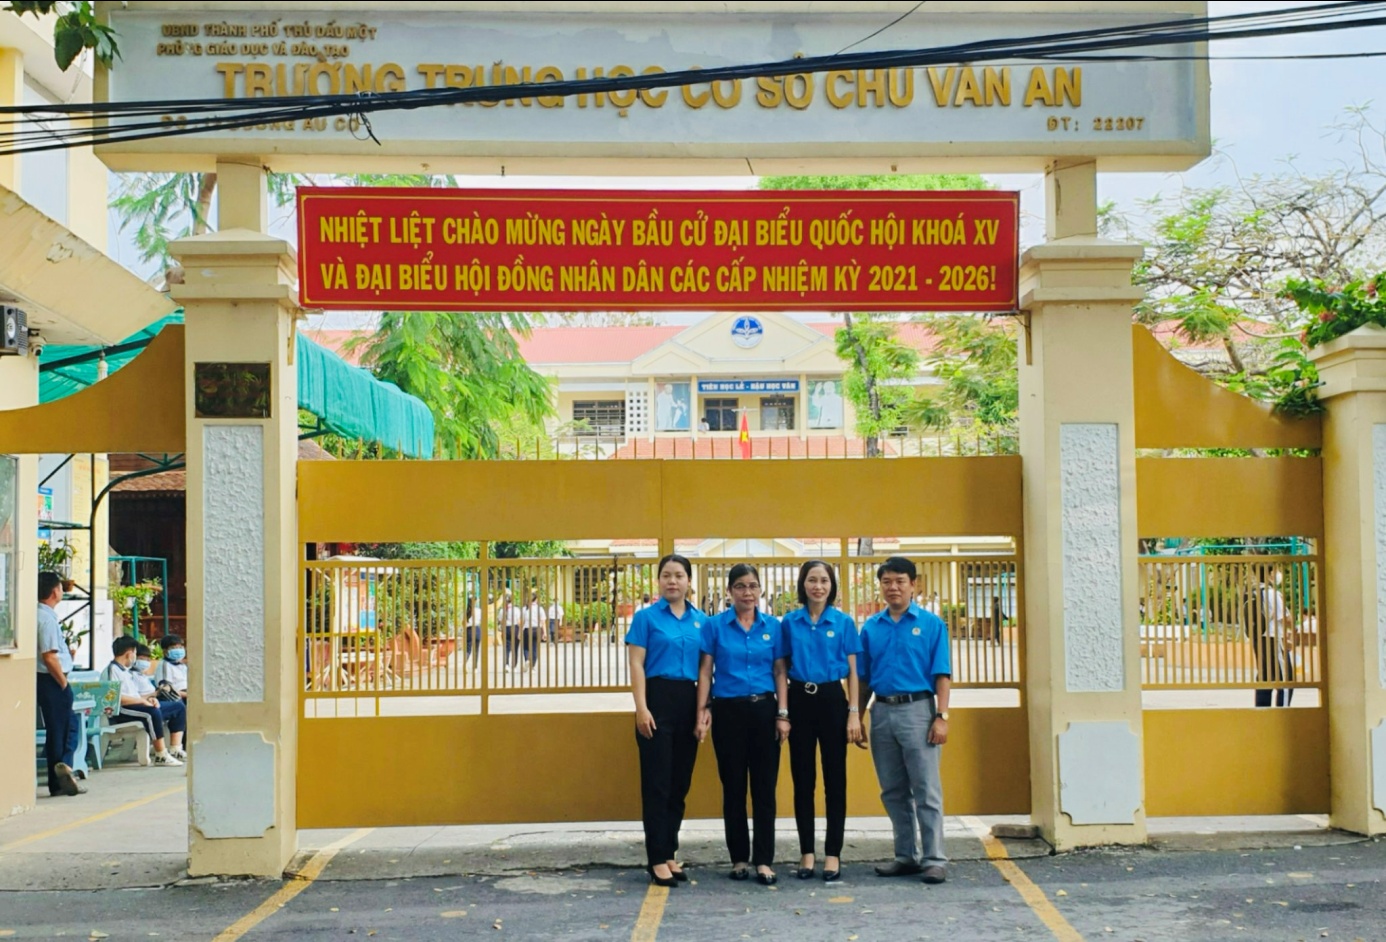 Công đoàn cơ sở Trường THCS Chu Văn An hưởng ứng phong trào mặc áo xanh Công đoàn vào ngày thứ 3 đầu tháng